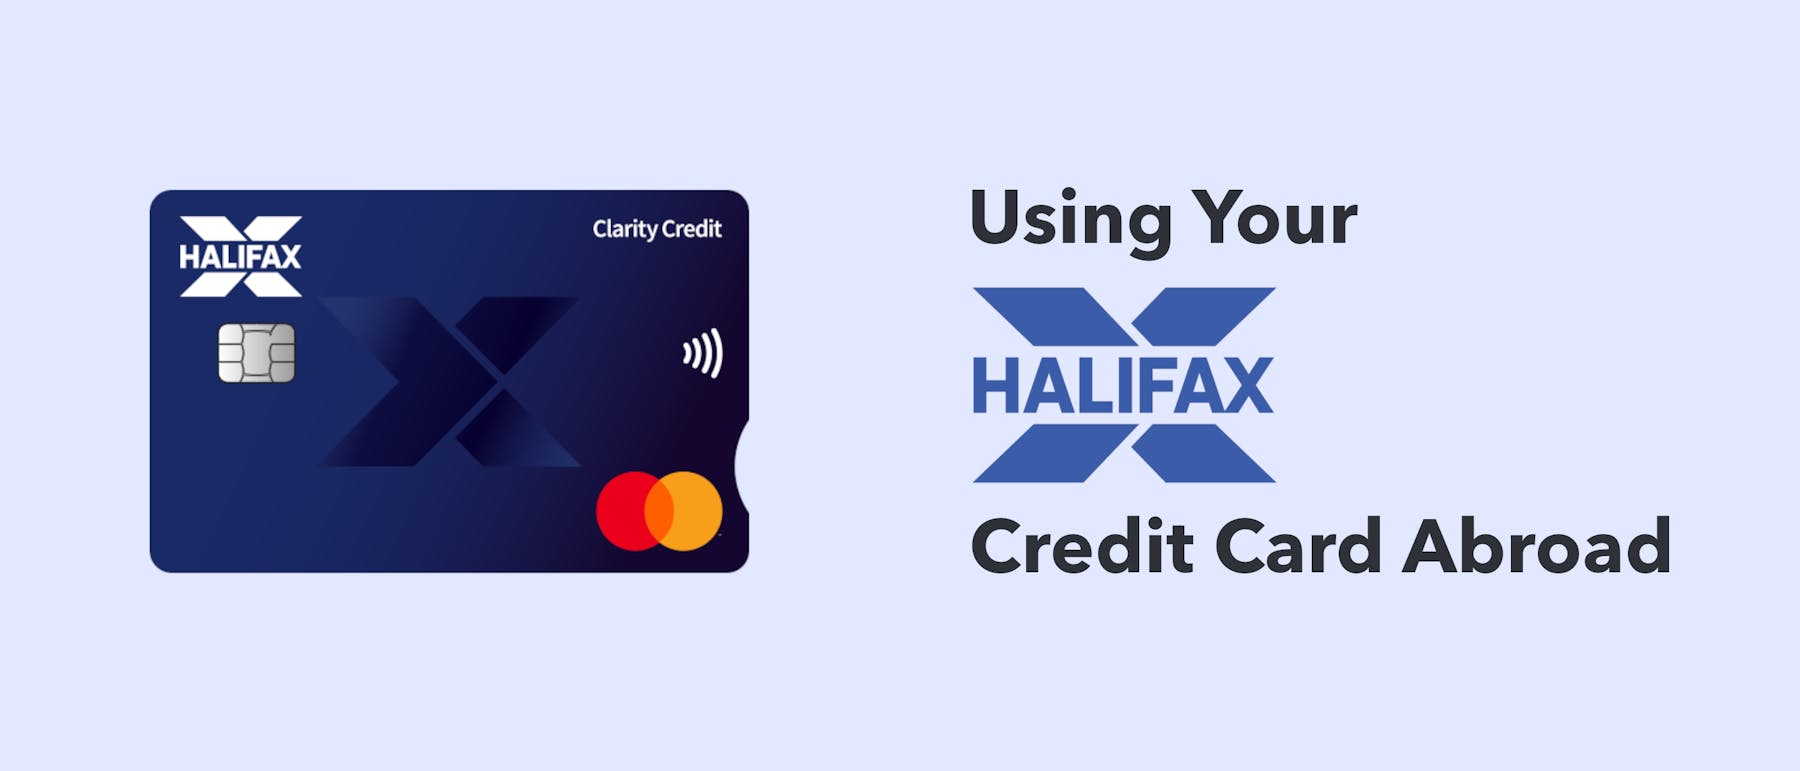 halifax travel money card